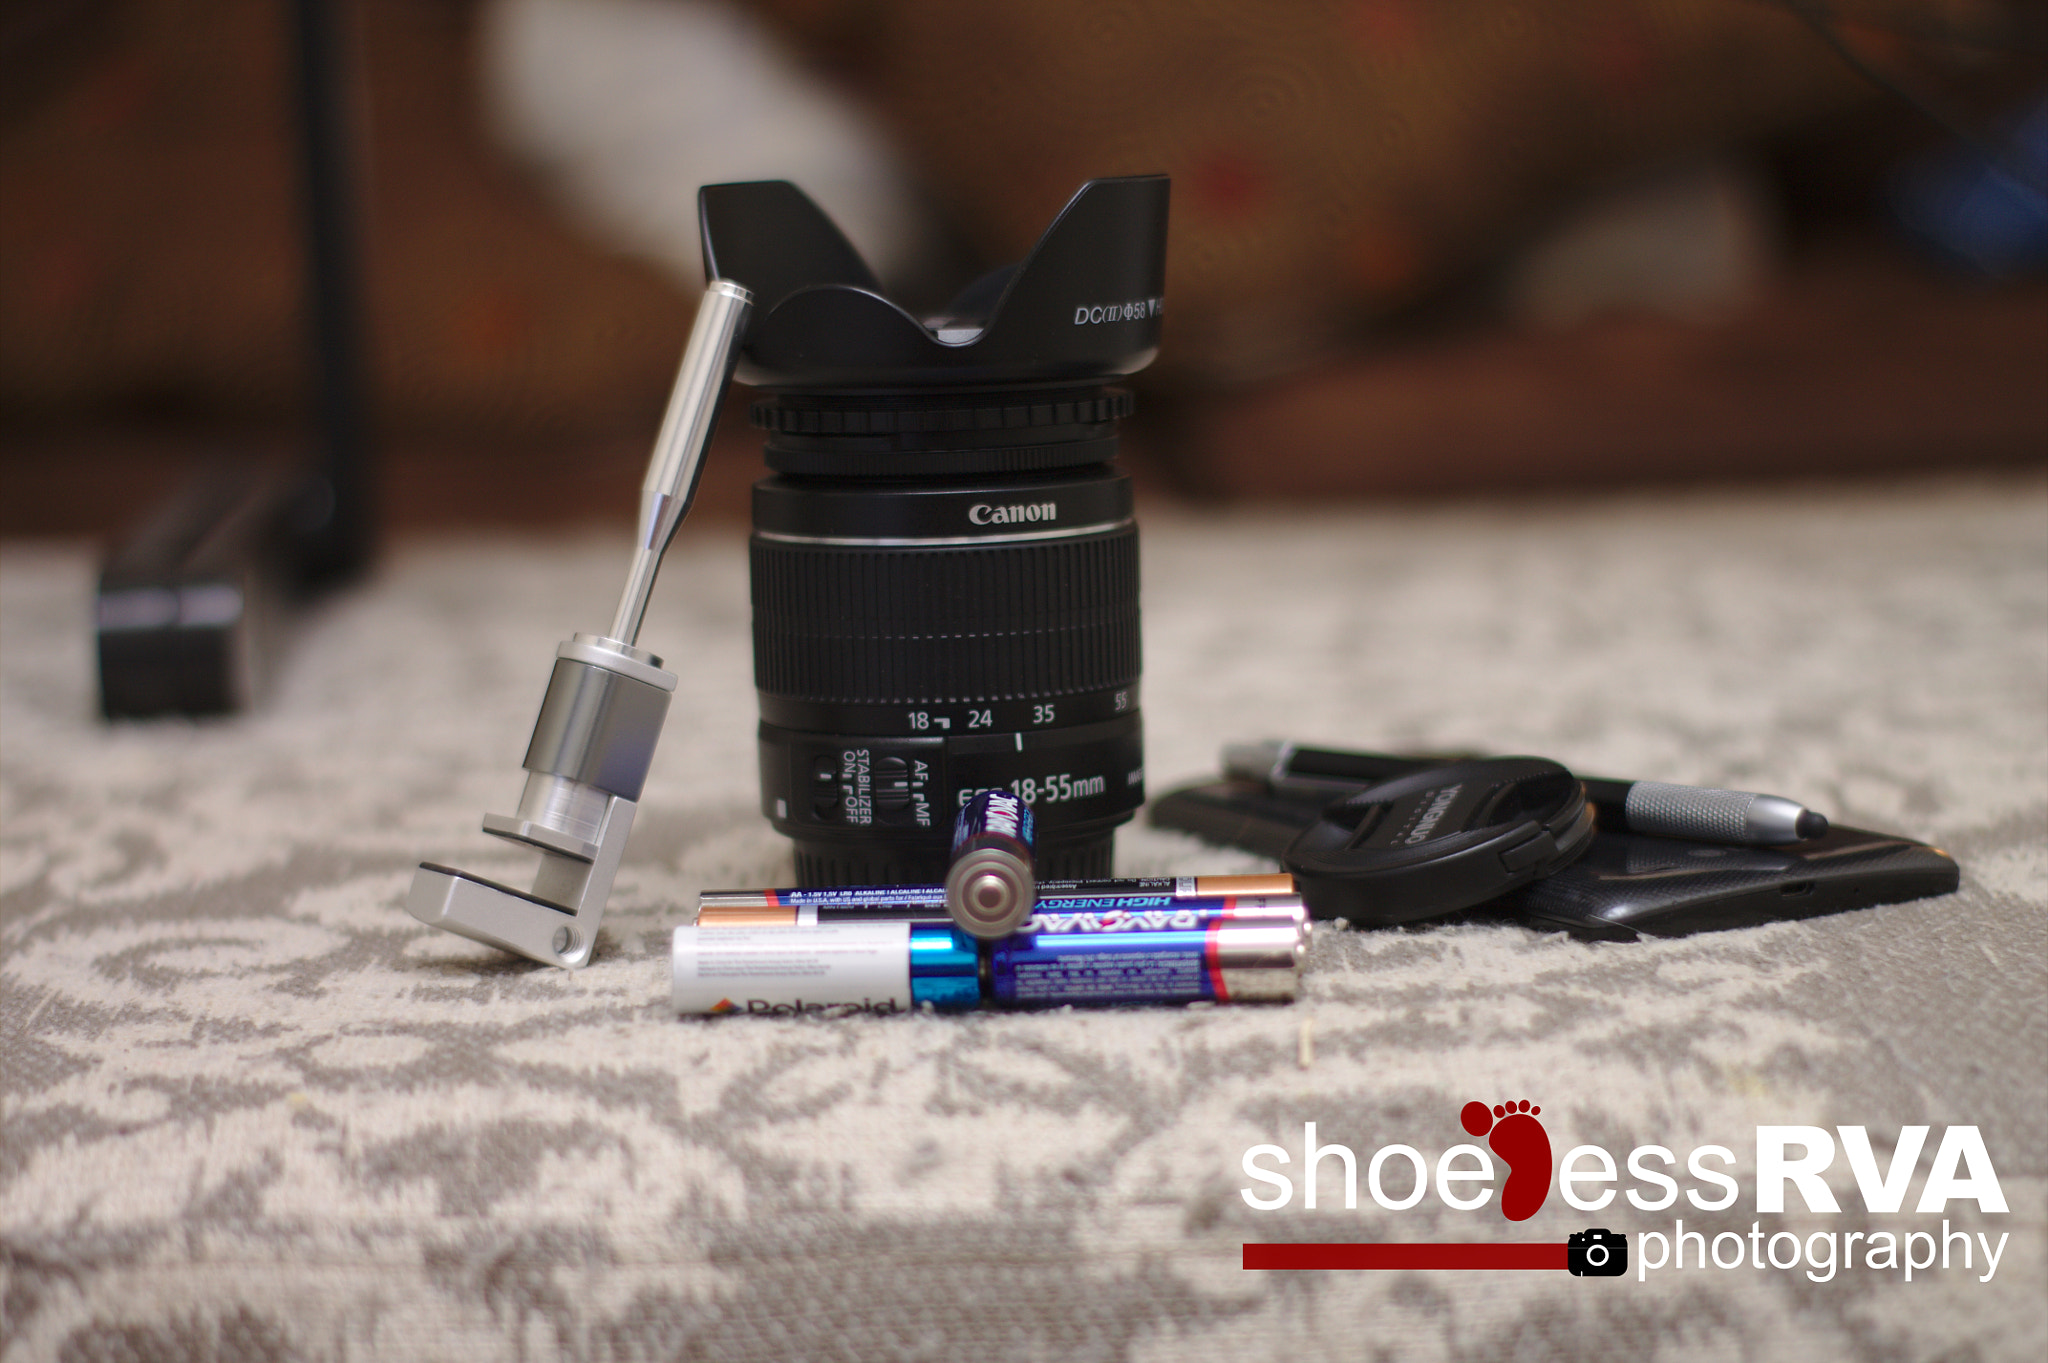 Canon EOS 1100D (EOS Rebel T3 / EOS Kiss X50) + Canon 50mm sample photo. Shooting a lens through a lens... photography